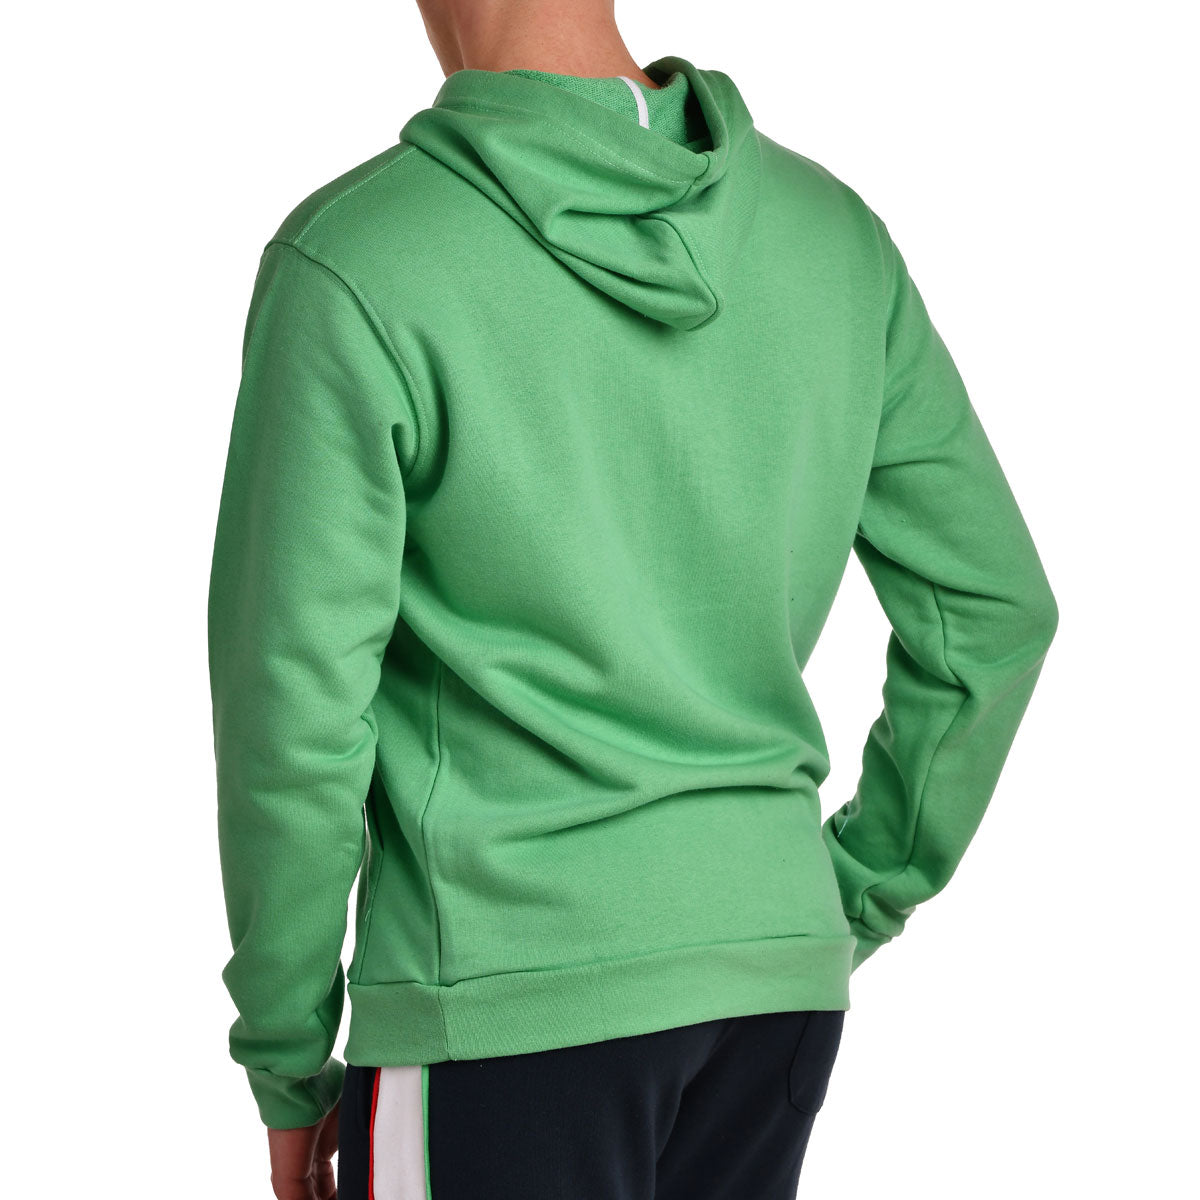 dlogo-jacket#verde